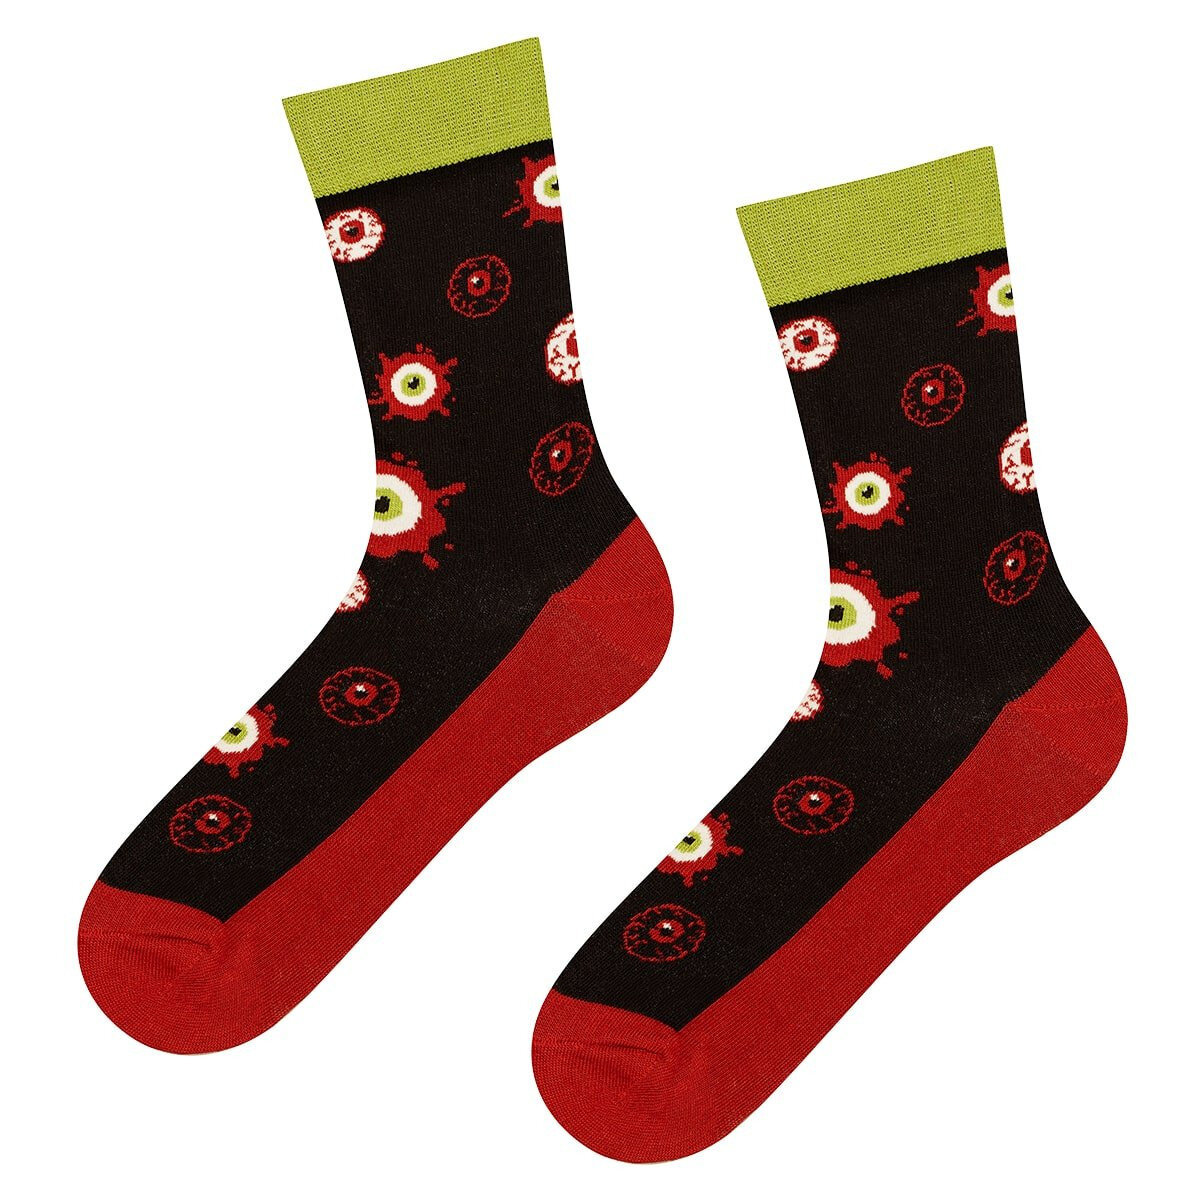 Pánské i dámské vzorované ponožky Good Stuff oči - Soxo, černá- MIX barev 35-40 i10_P45849_1:1132_2:520_